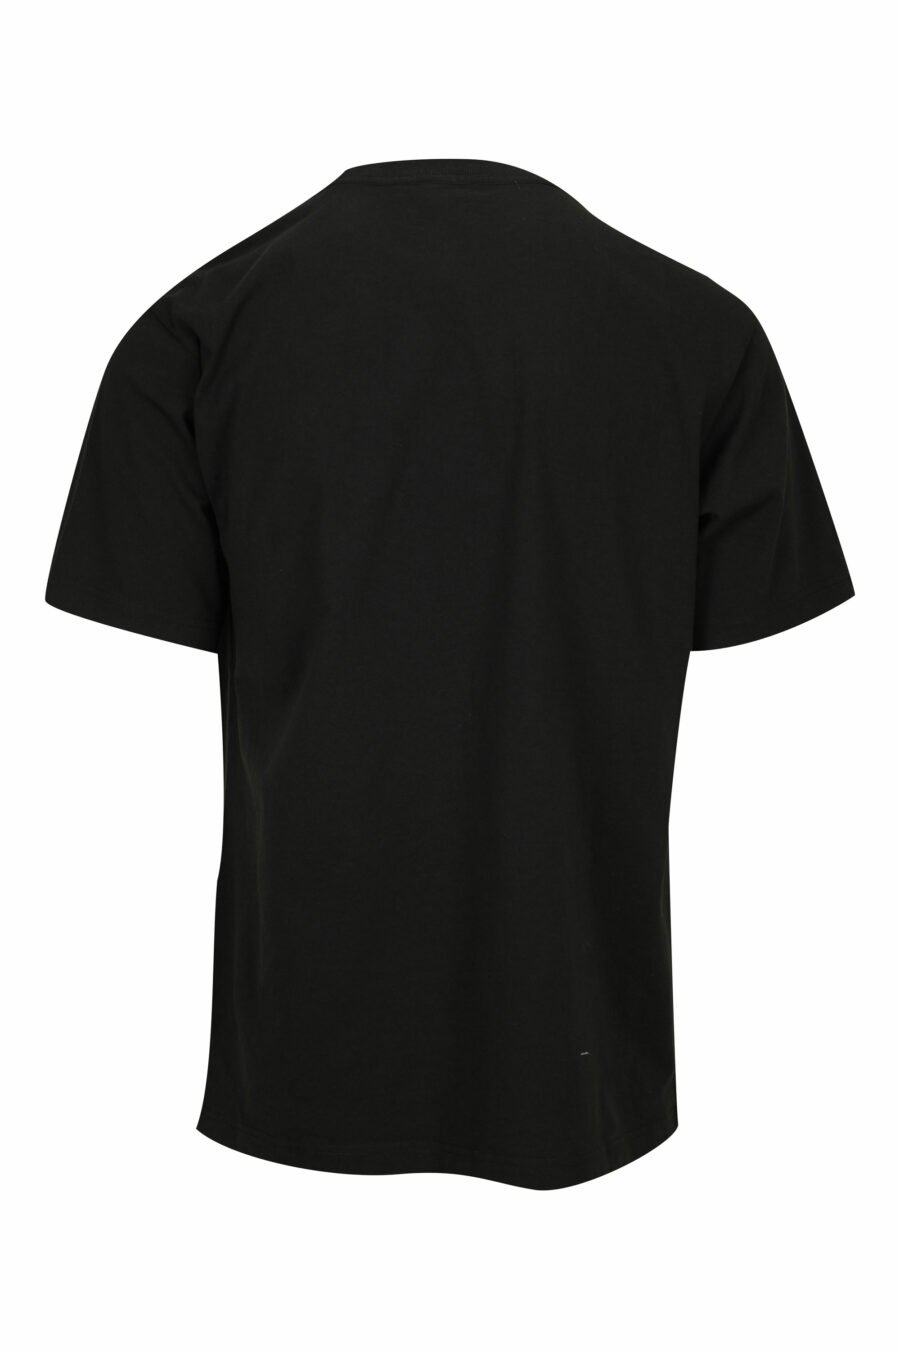 Black T-shirt with diagonal maxilogo "kenzo orange" - 3612230626997 1